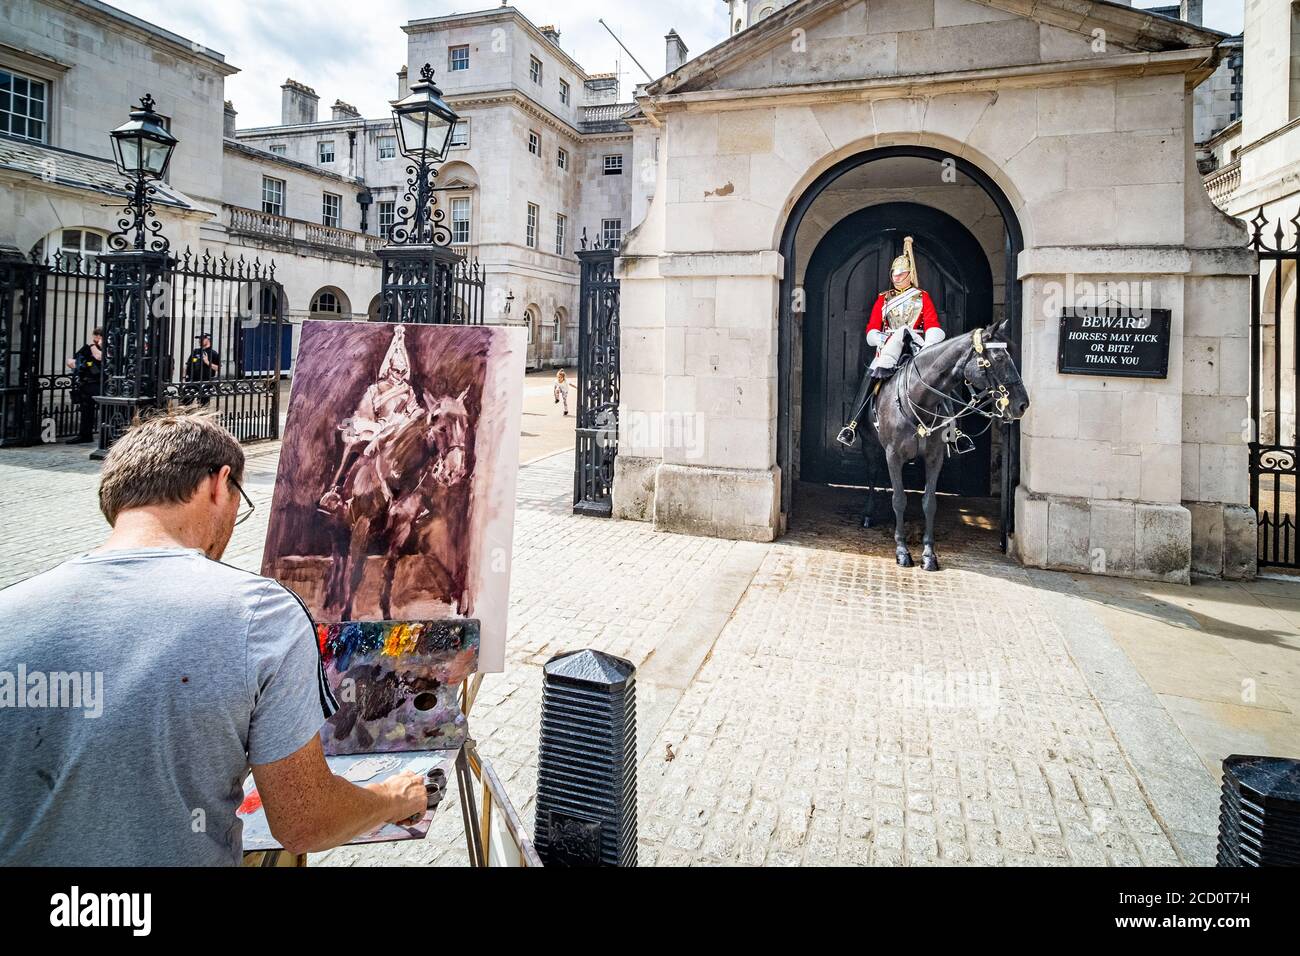 Londra- UN uomo che dipinge una scena alla Horse Guard Barracks, una popolare attrazione turistica a Whitehall, Londra. Foto Stock